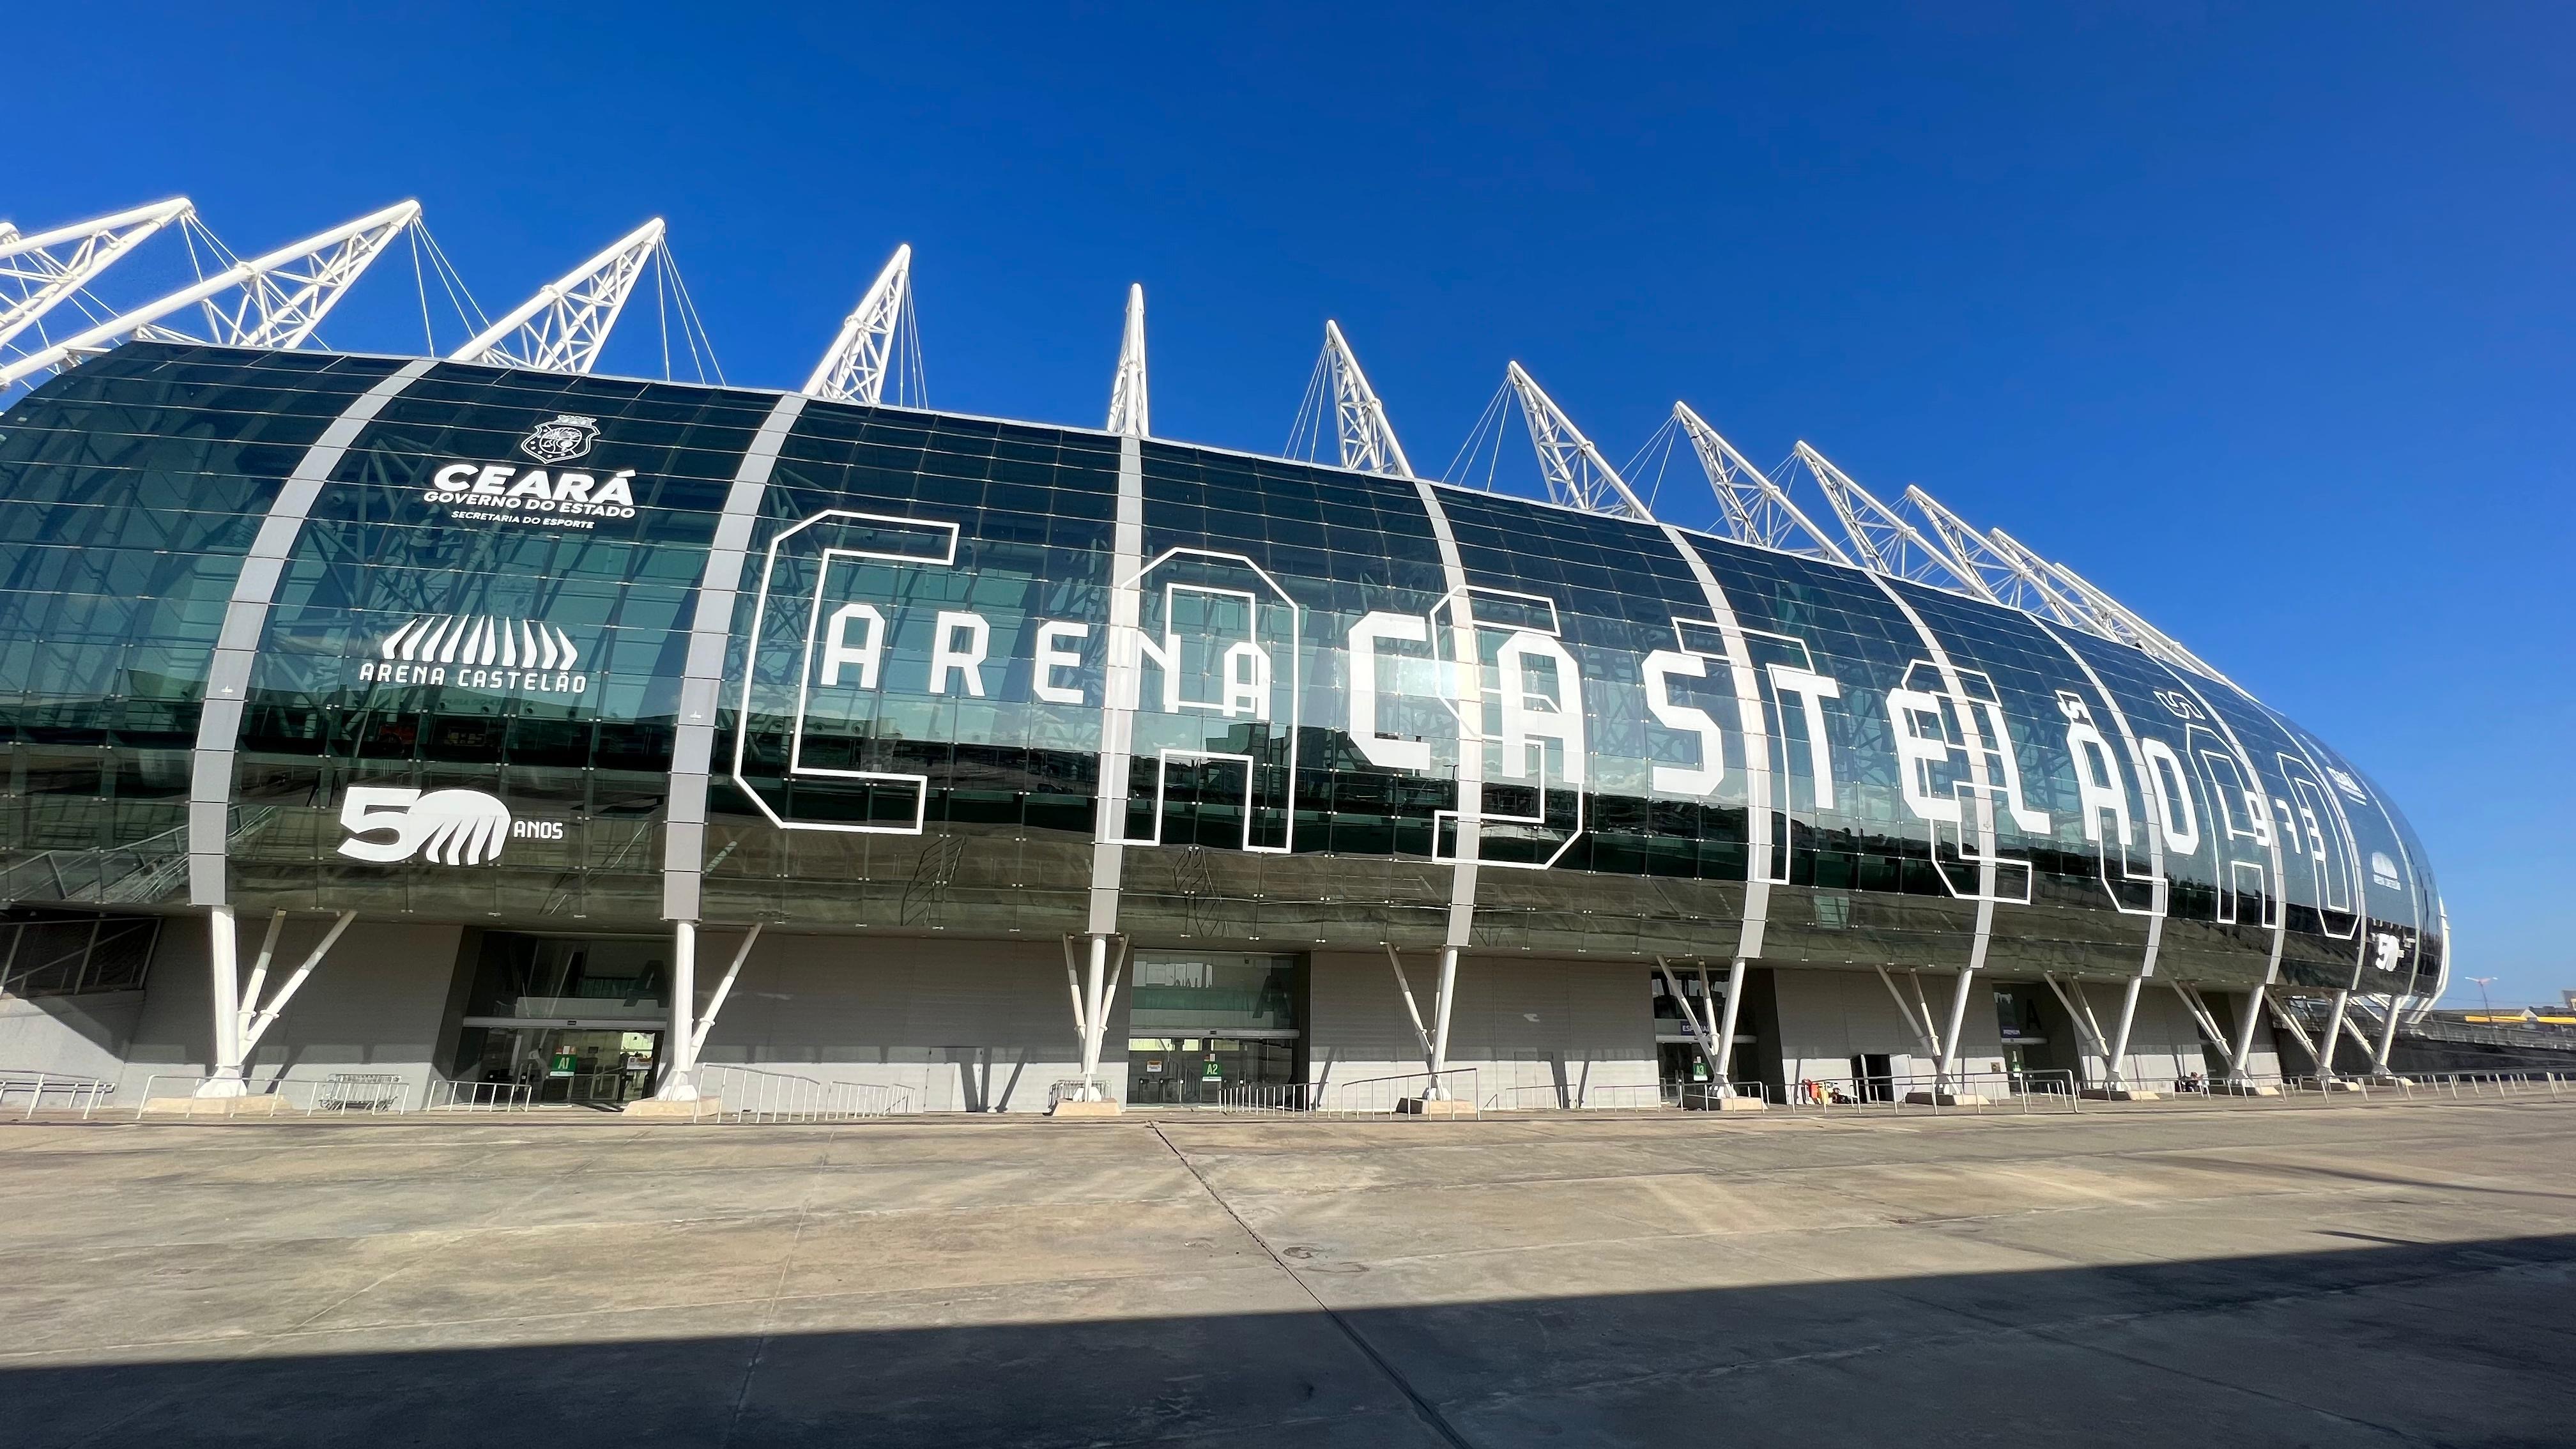 noticia Governo do Ceará realiza solenidade em comemoração aos 50 anos da Arena Castelão e inauguração de melhorias